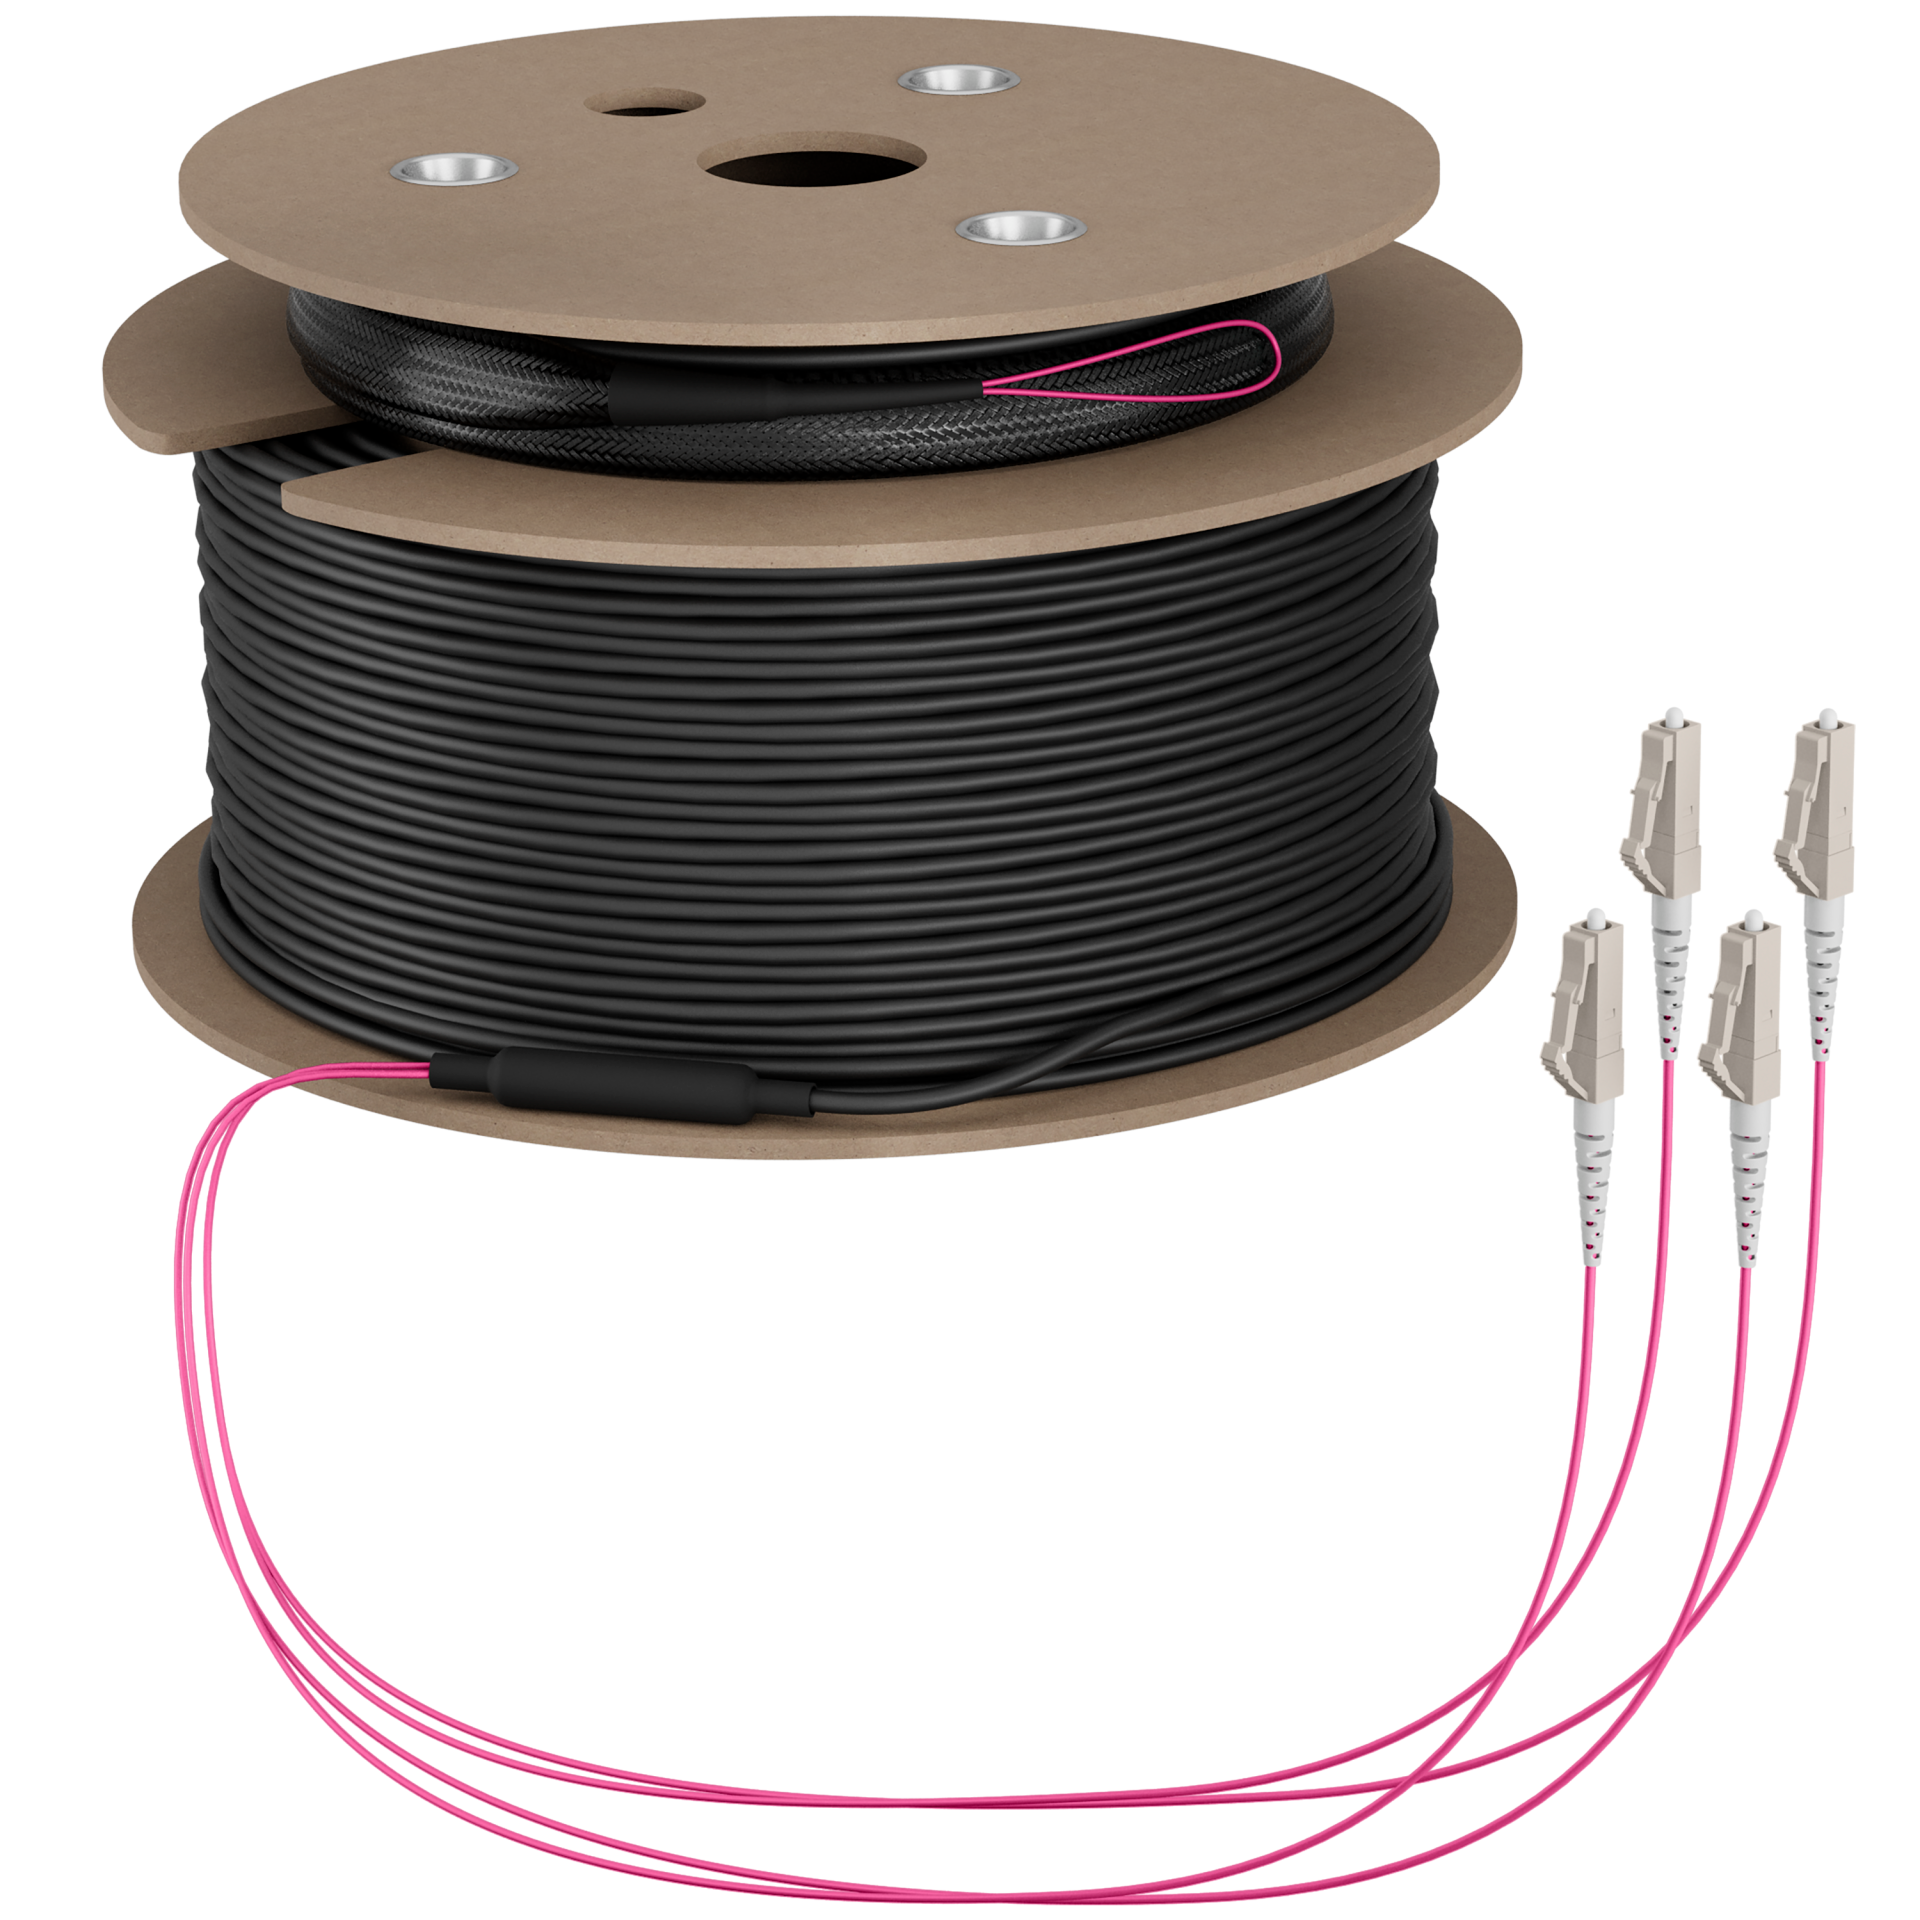 Trunk cable U-DQ(ZN)BH OM4 4G (1x4) LC-LC,100m Dca LSZH